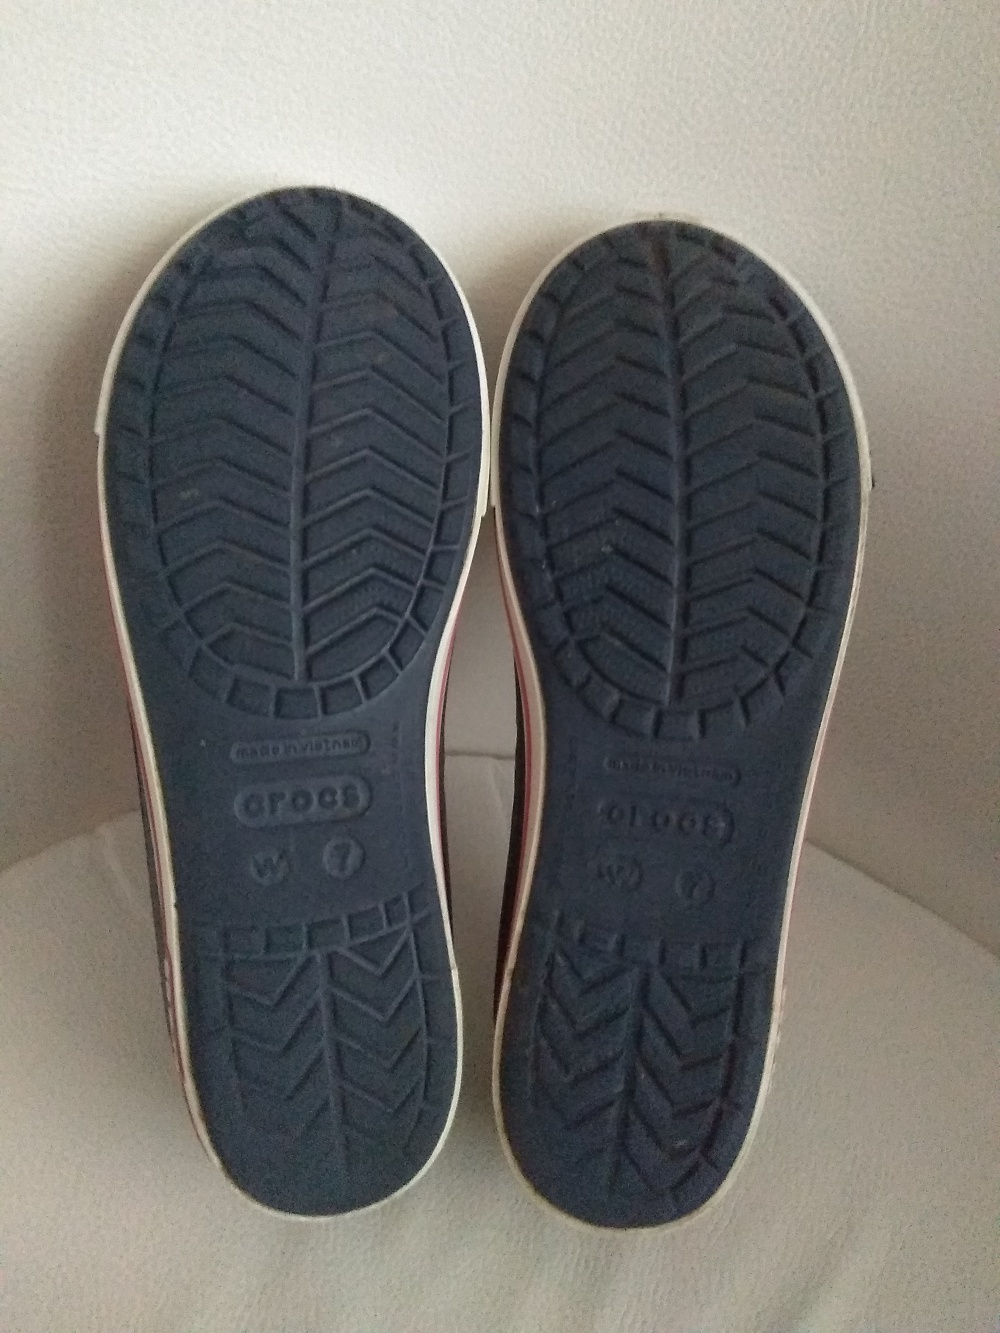 Балетки Crocs, размер W7 на стопу 23,5 - 23,7 см